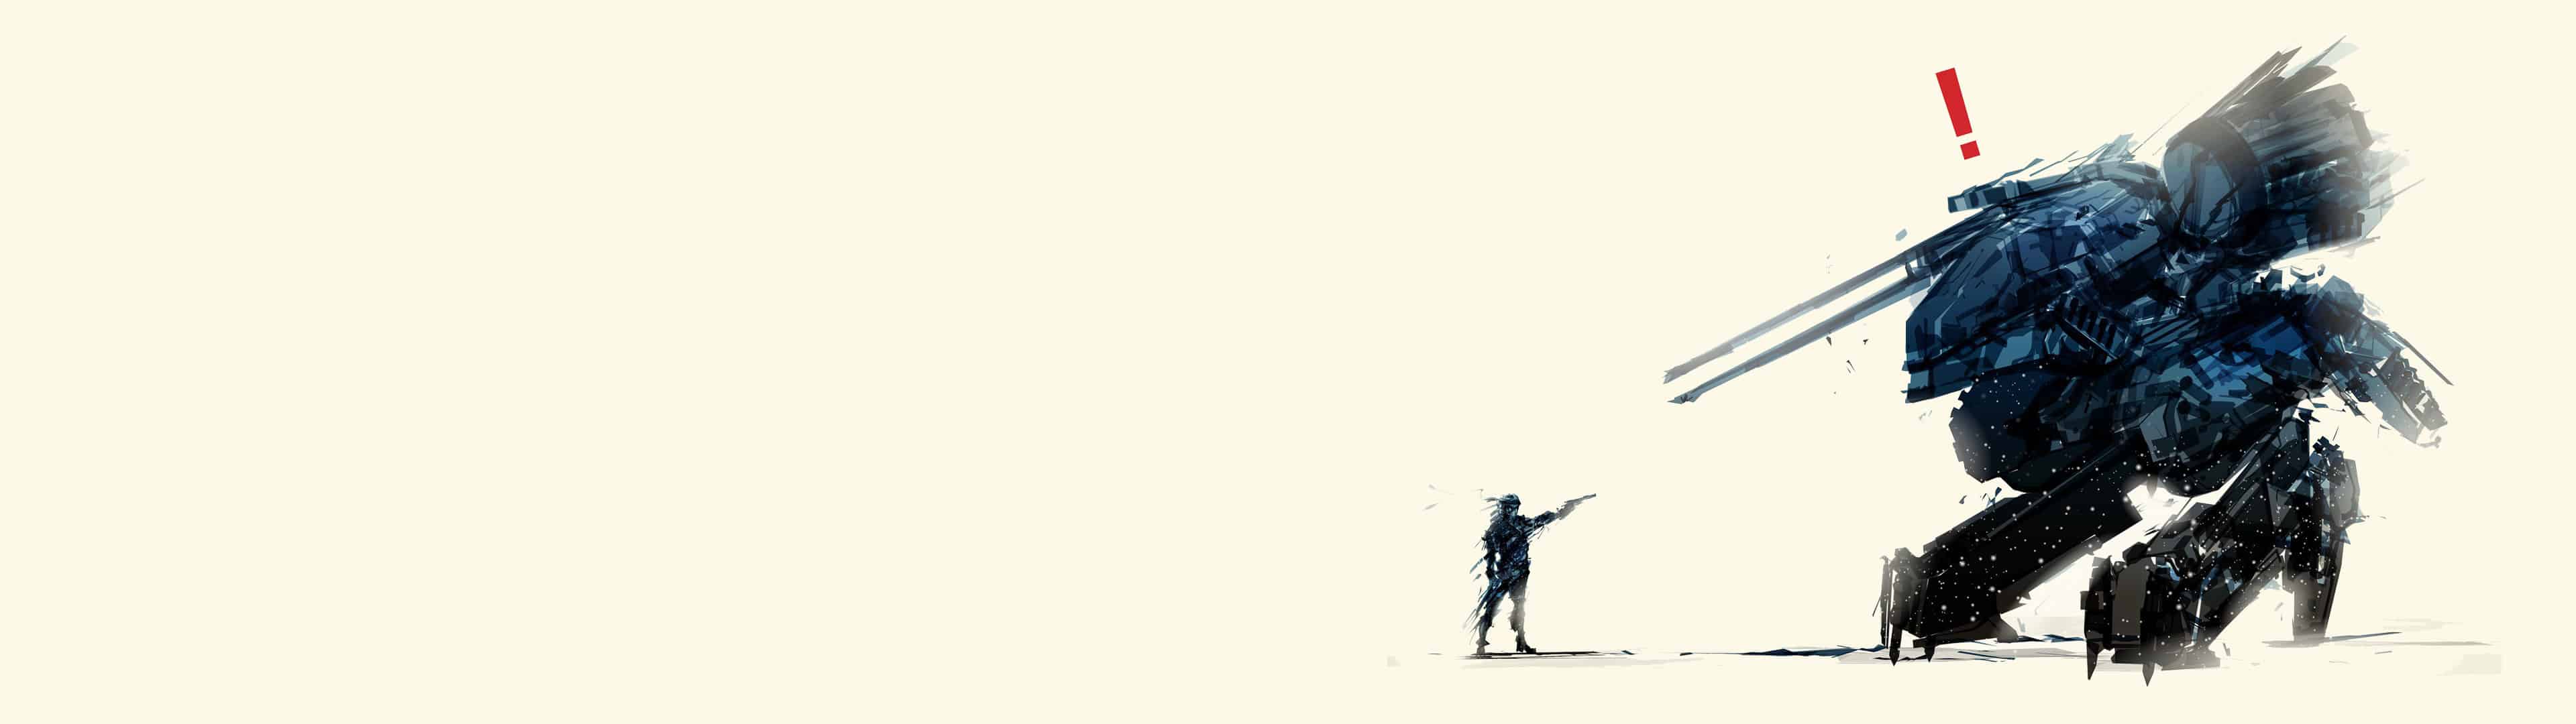 Metal Gear Rising Revengeance Raiden Uhd 4k Wallpaper - Metal Gear Solid Concept Art , HD Wallpaper & Backgrounds